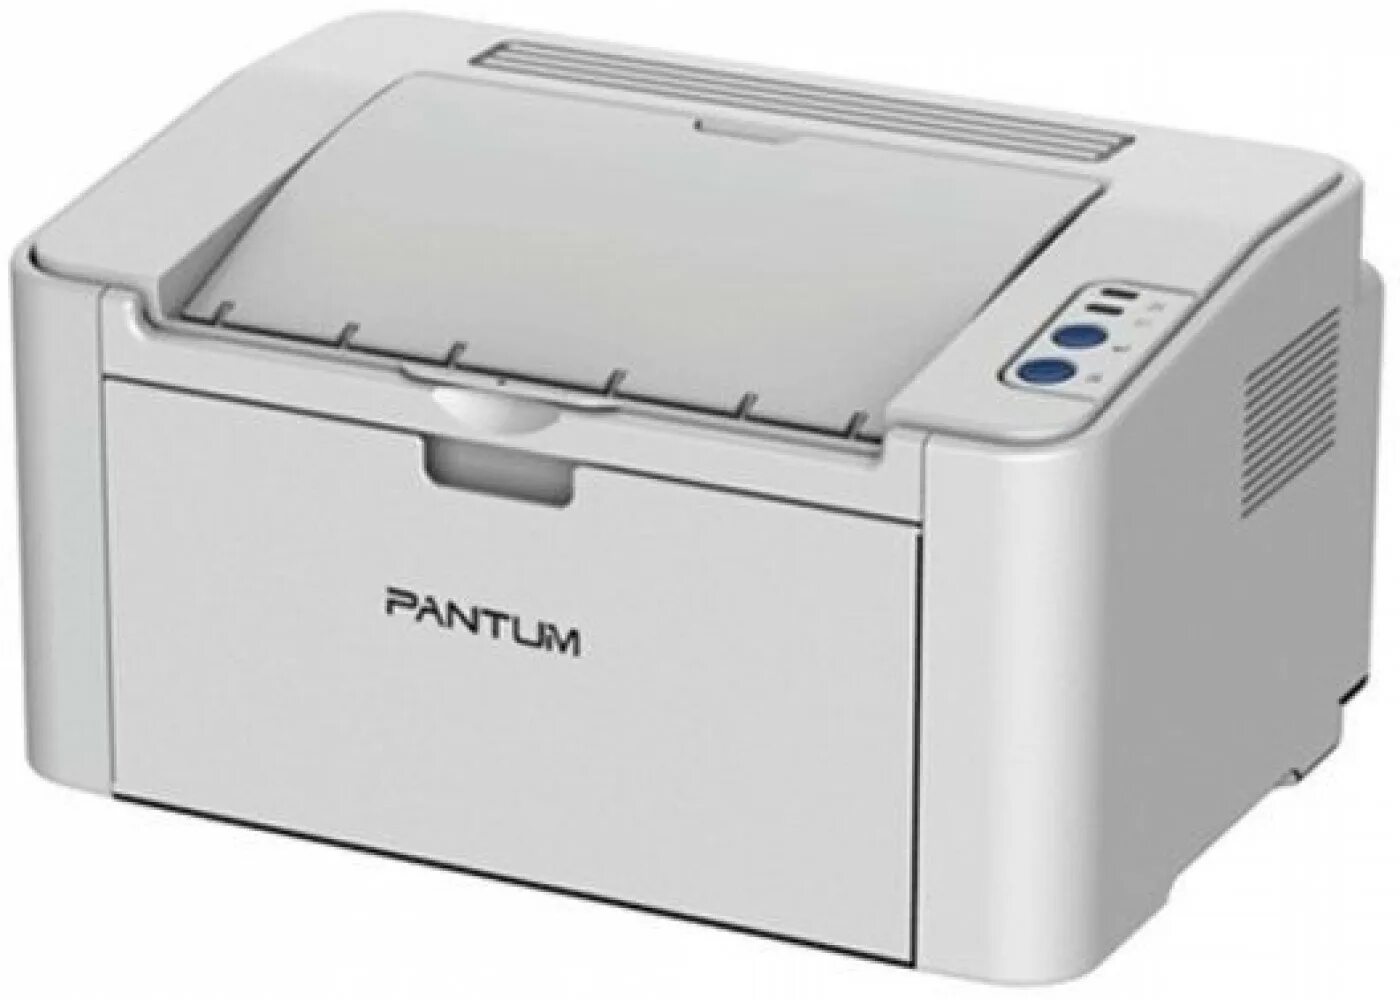 Принтер лазерный Pantum p2200. Принтер лазерный Pantum p2200 a4. Принтер лазерный Pantum p2200 серый. Pantum принтер p2200 принтер.